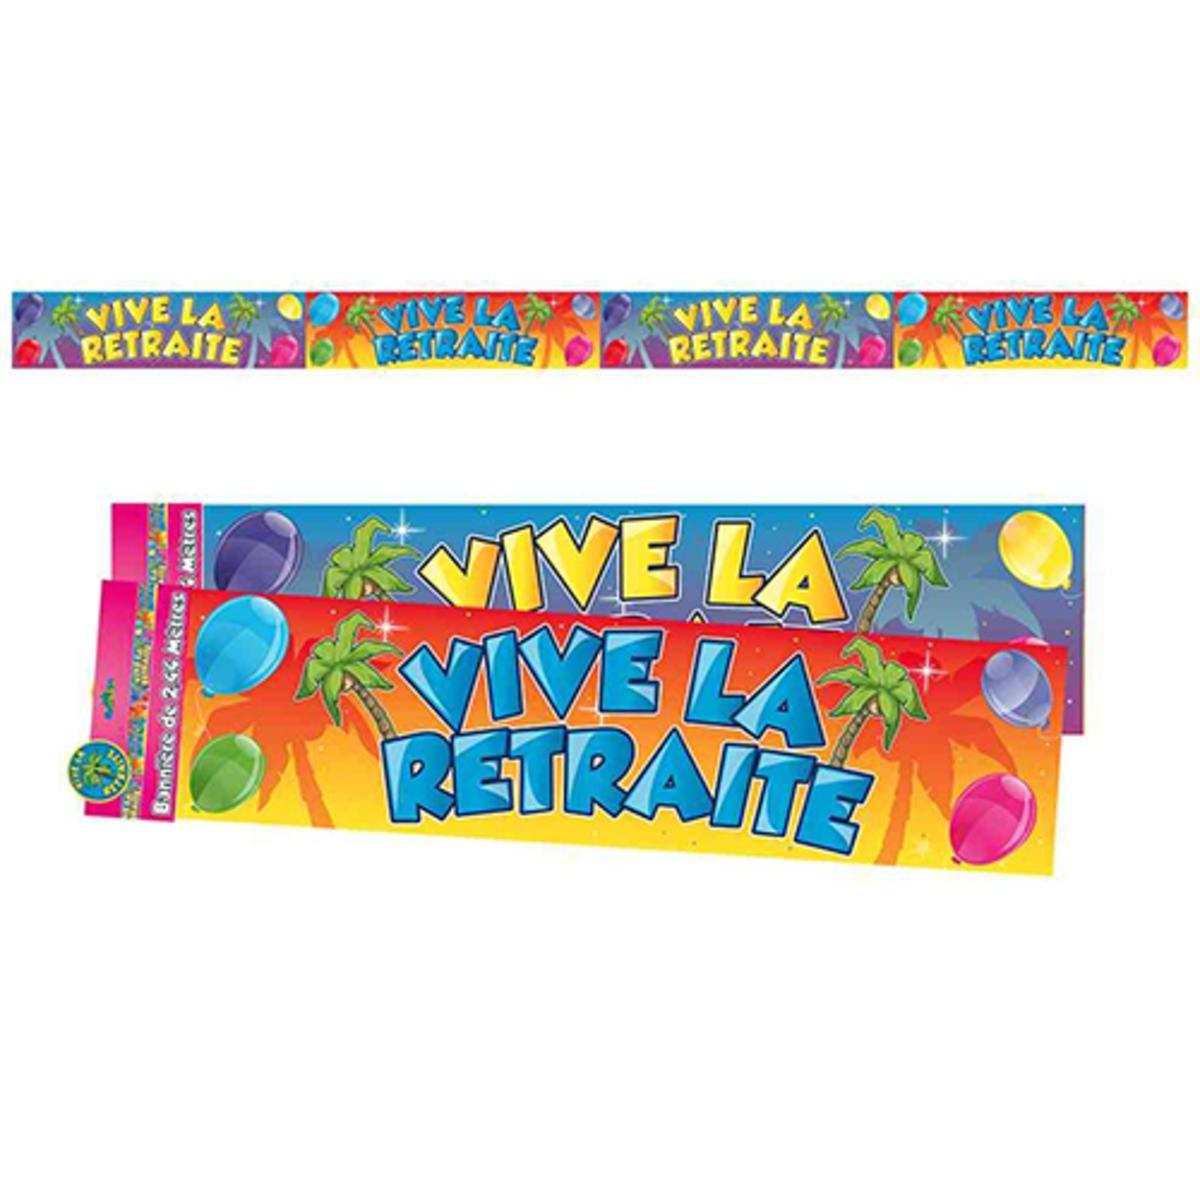 Bannière Vive la retraite - 2,44 m x 16 cm - Multicolore